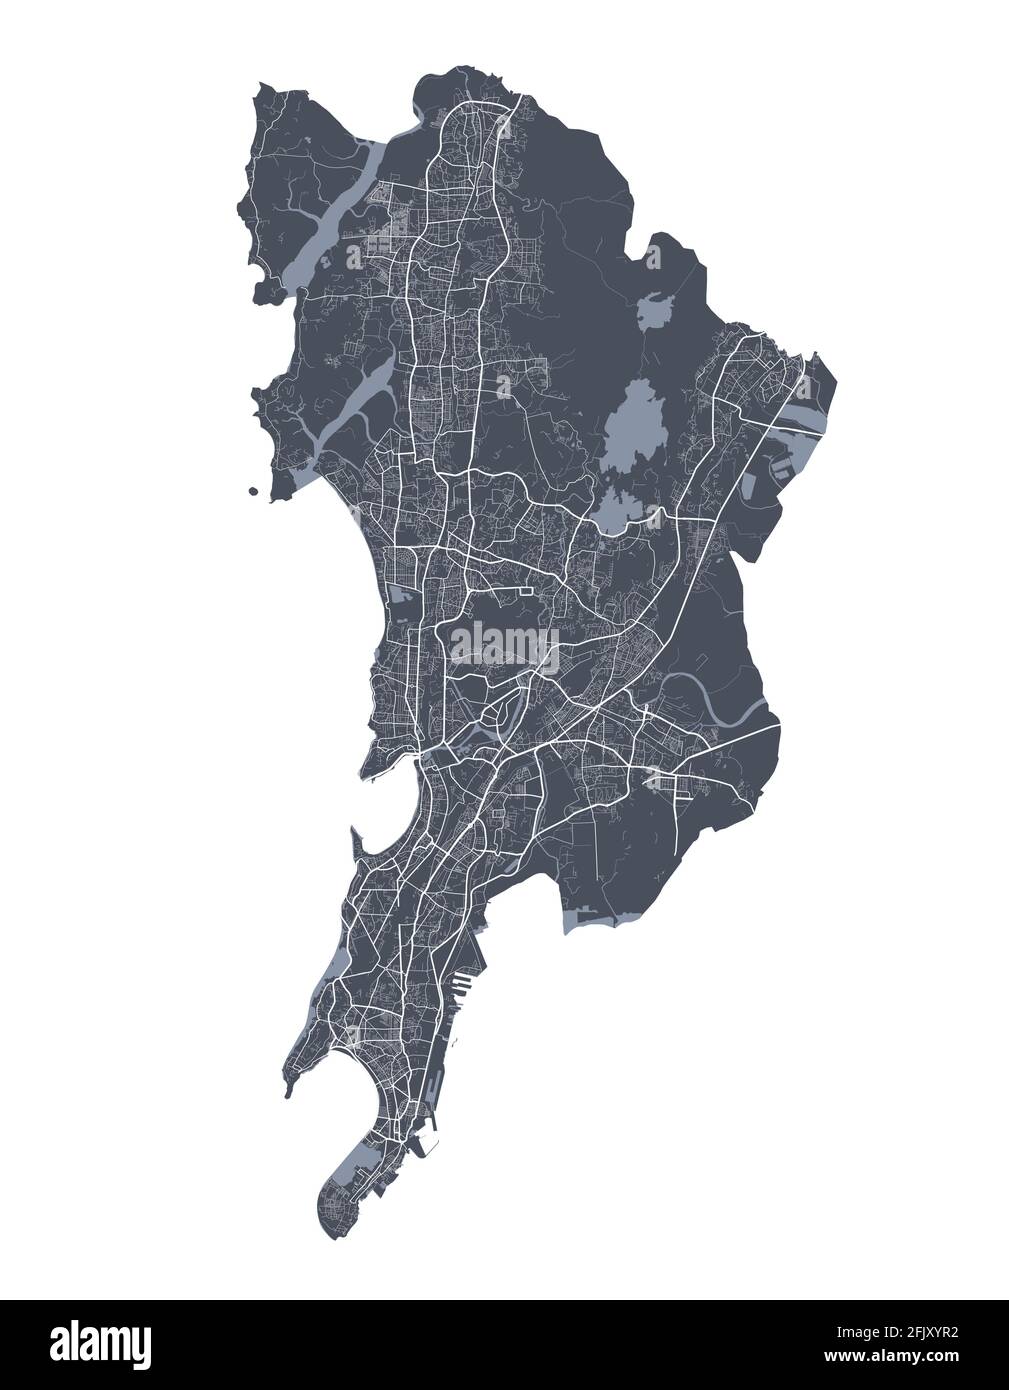 Mappa di Mumbai. Mappa vettoriale dettagliata dell'area amministrativa della città di Mumbai. Poster del paesaggio urbano vista aria metropolitana. Terra buia con strade bianche, strade e un Illustrazione Vettoriale